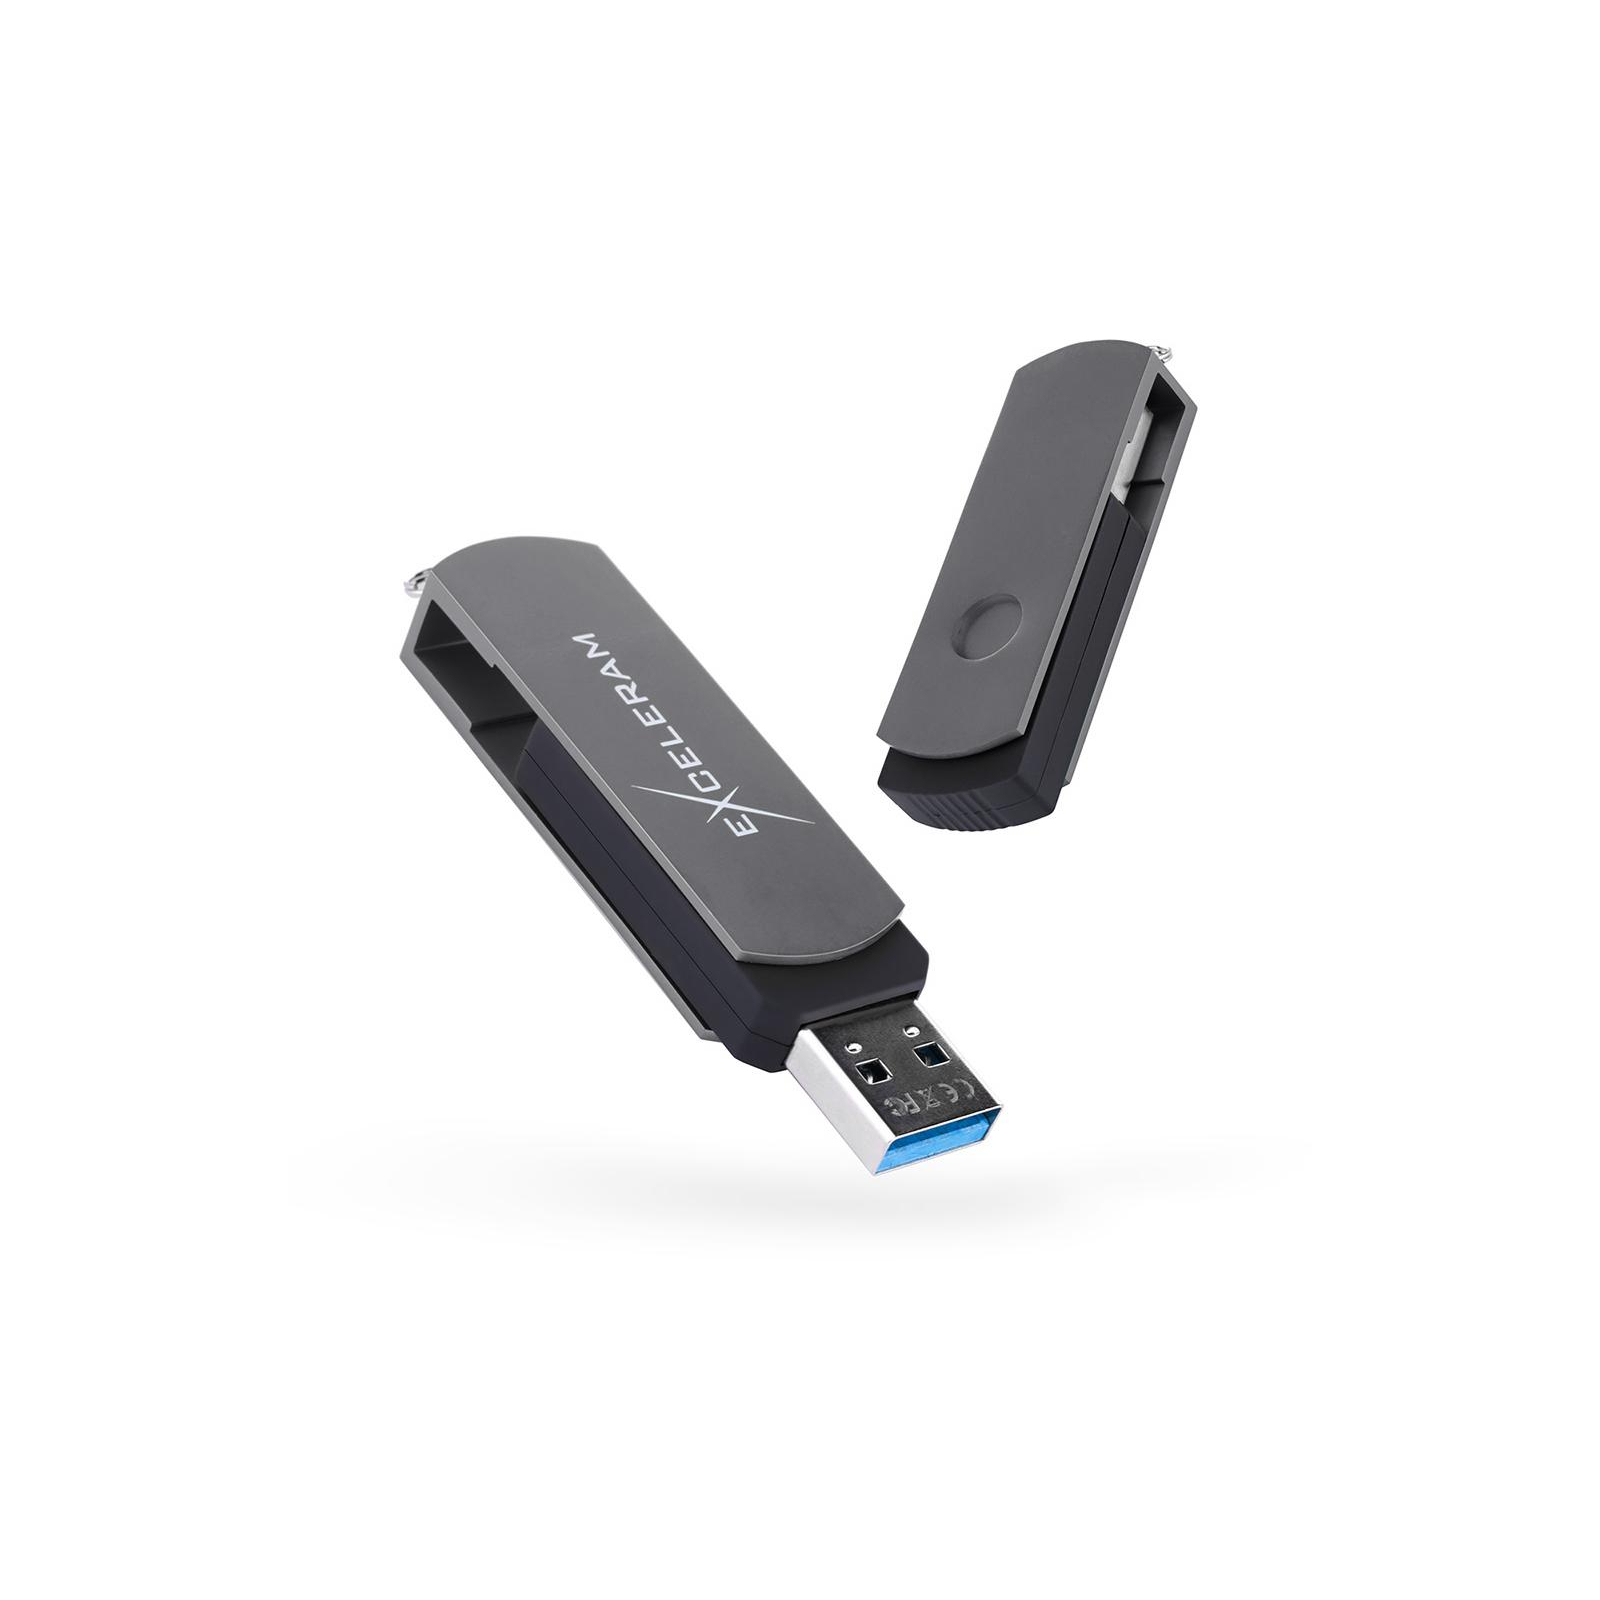 USB флеш накопичувач eXceleram 16GB P2 Series White/Black USB 3.1 Gen 1 (EXP2U3WHB16)